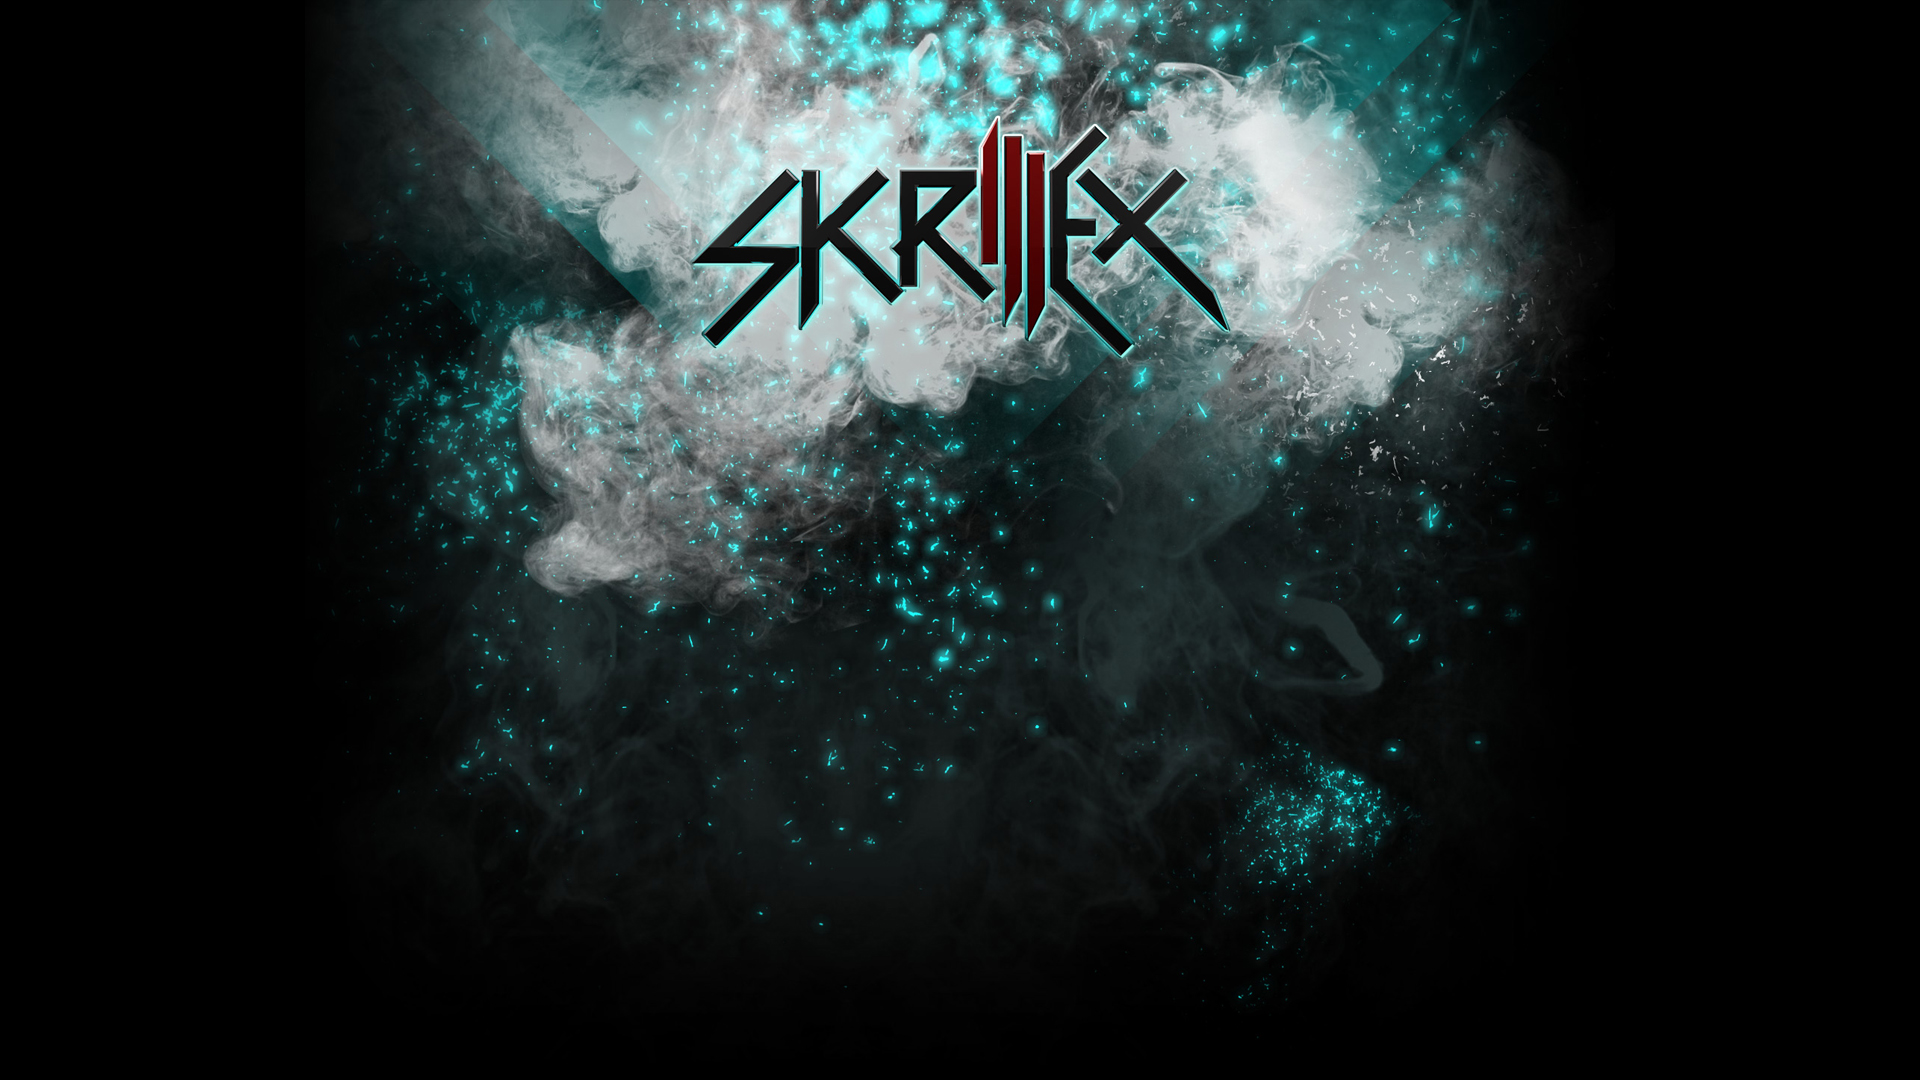 Skrillex Hd Wallpaper - Skrillex Logo Hd , HD Wallpaper & Backgrounds